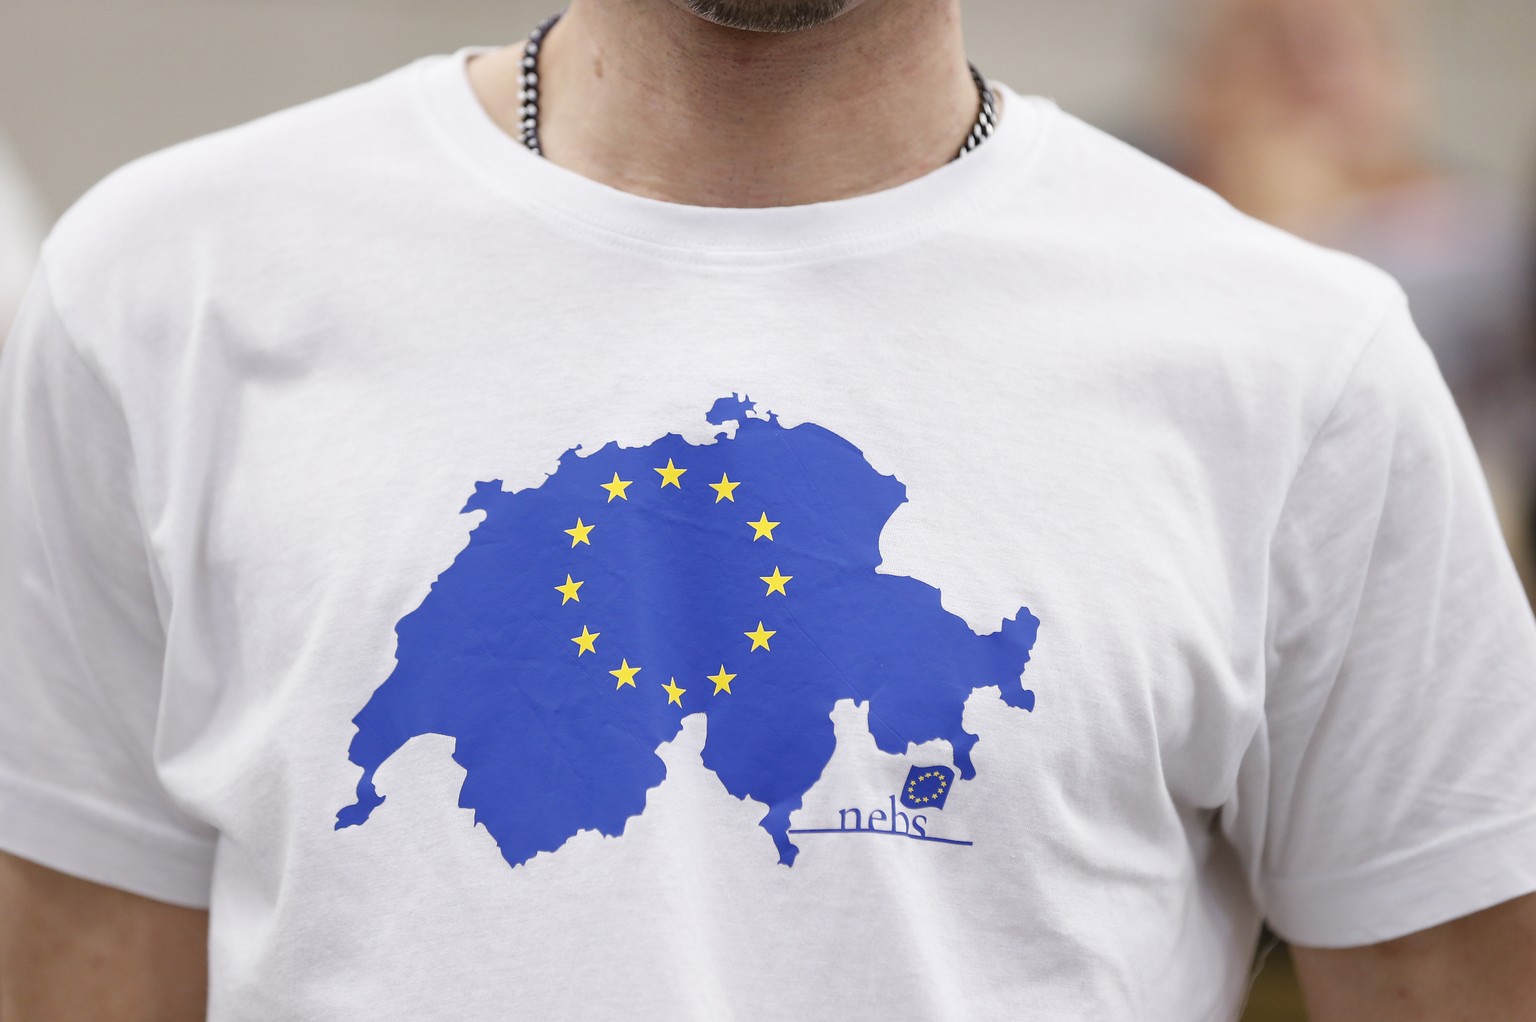 Ein Mitglied der NEBS, Neue Europaeische Bewegung Schweiz, traegt ein T-Shirt auf dem die Schweiz und die Europa-Flagge abgebildet sind, am Samstag, 10. Mai 2014 waehrend der Generalversammlung der NE ...